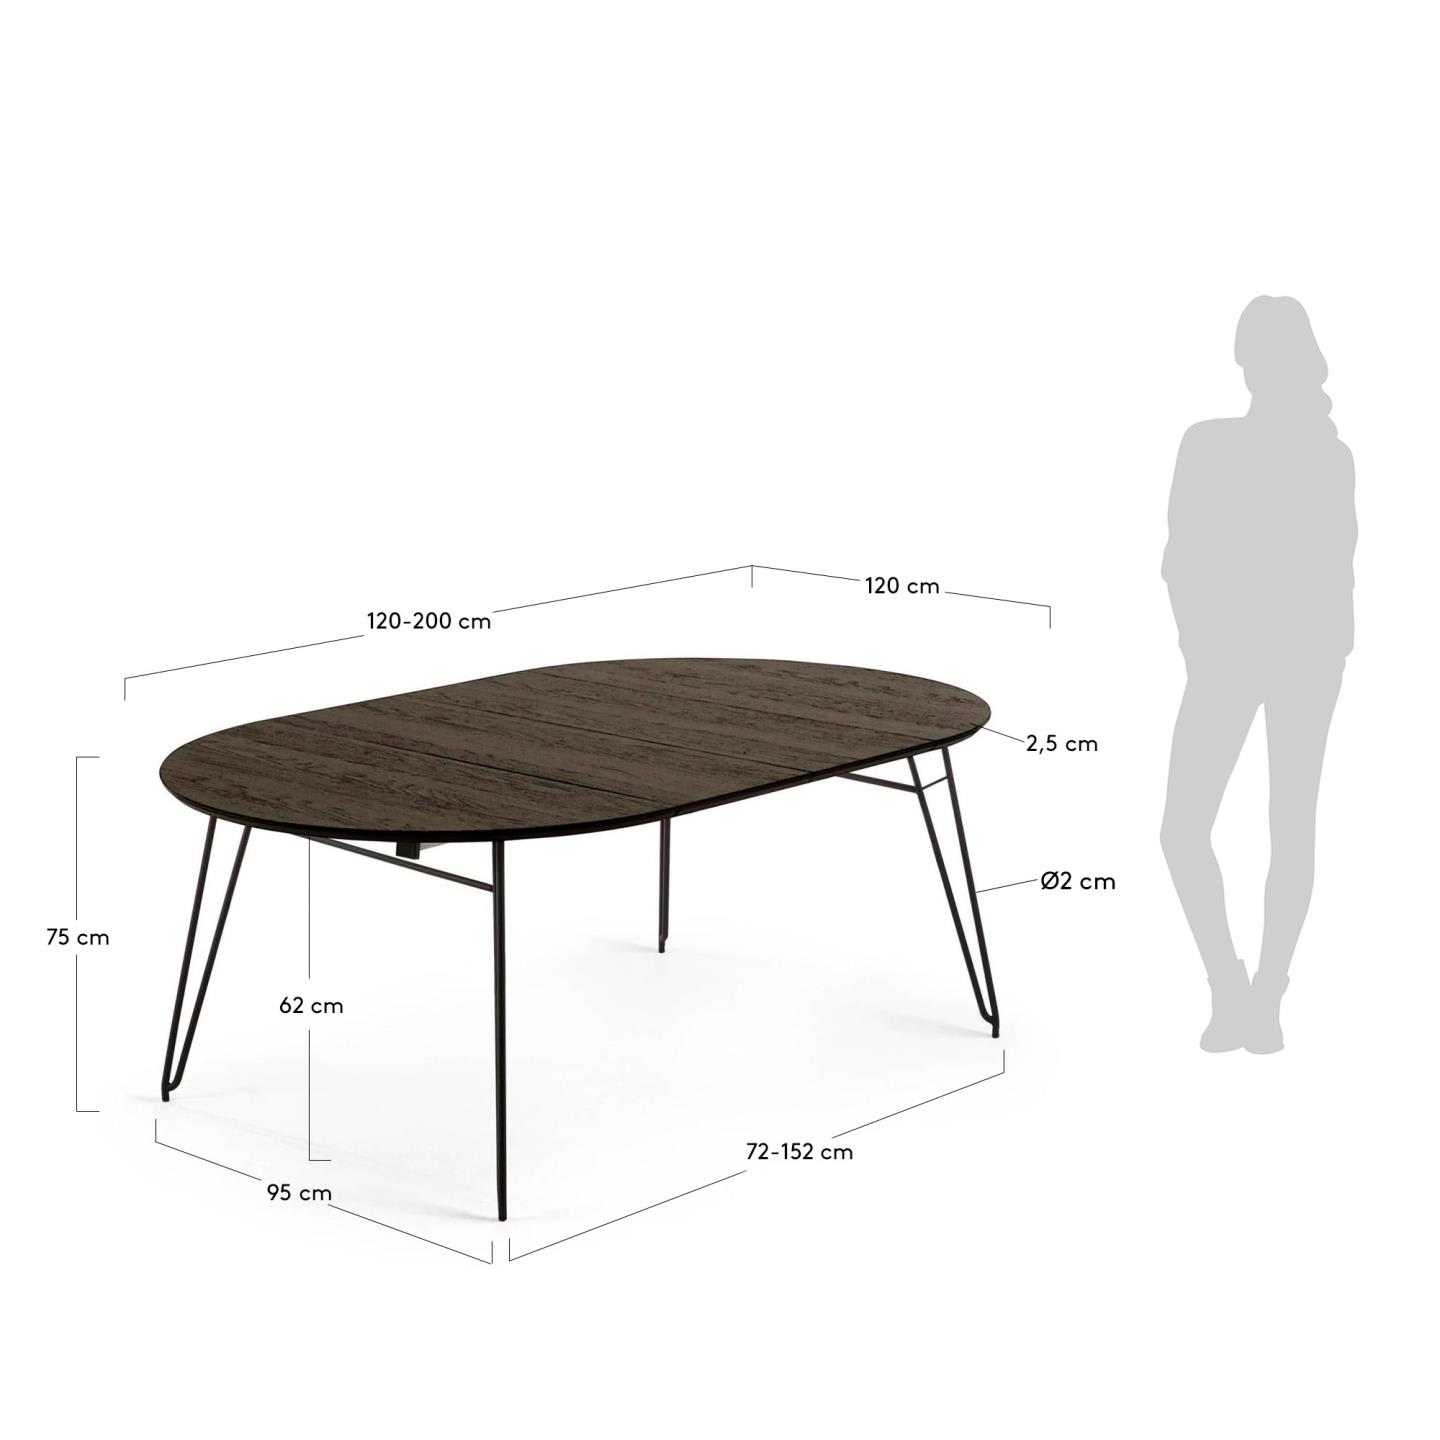 밀란 애쉬 라운드 확장형 테이블(정원형/120x120-200cm) - 크기